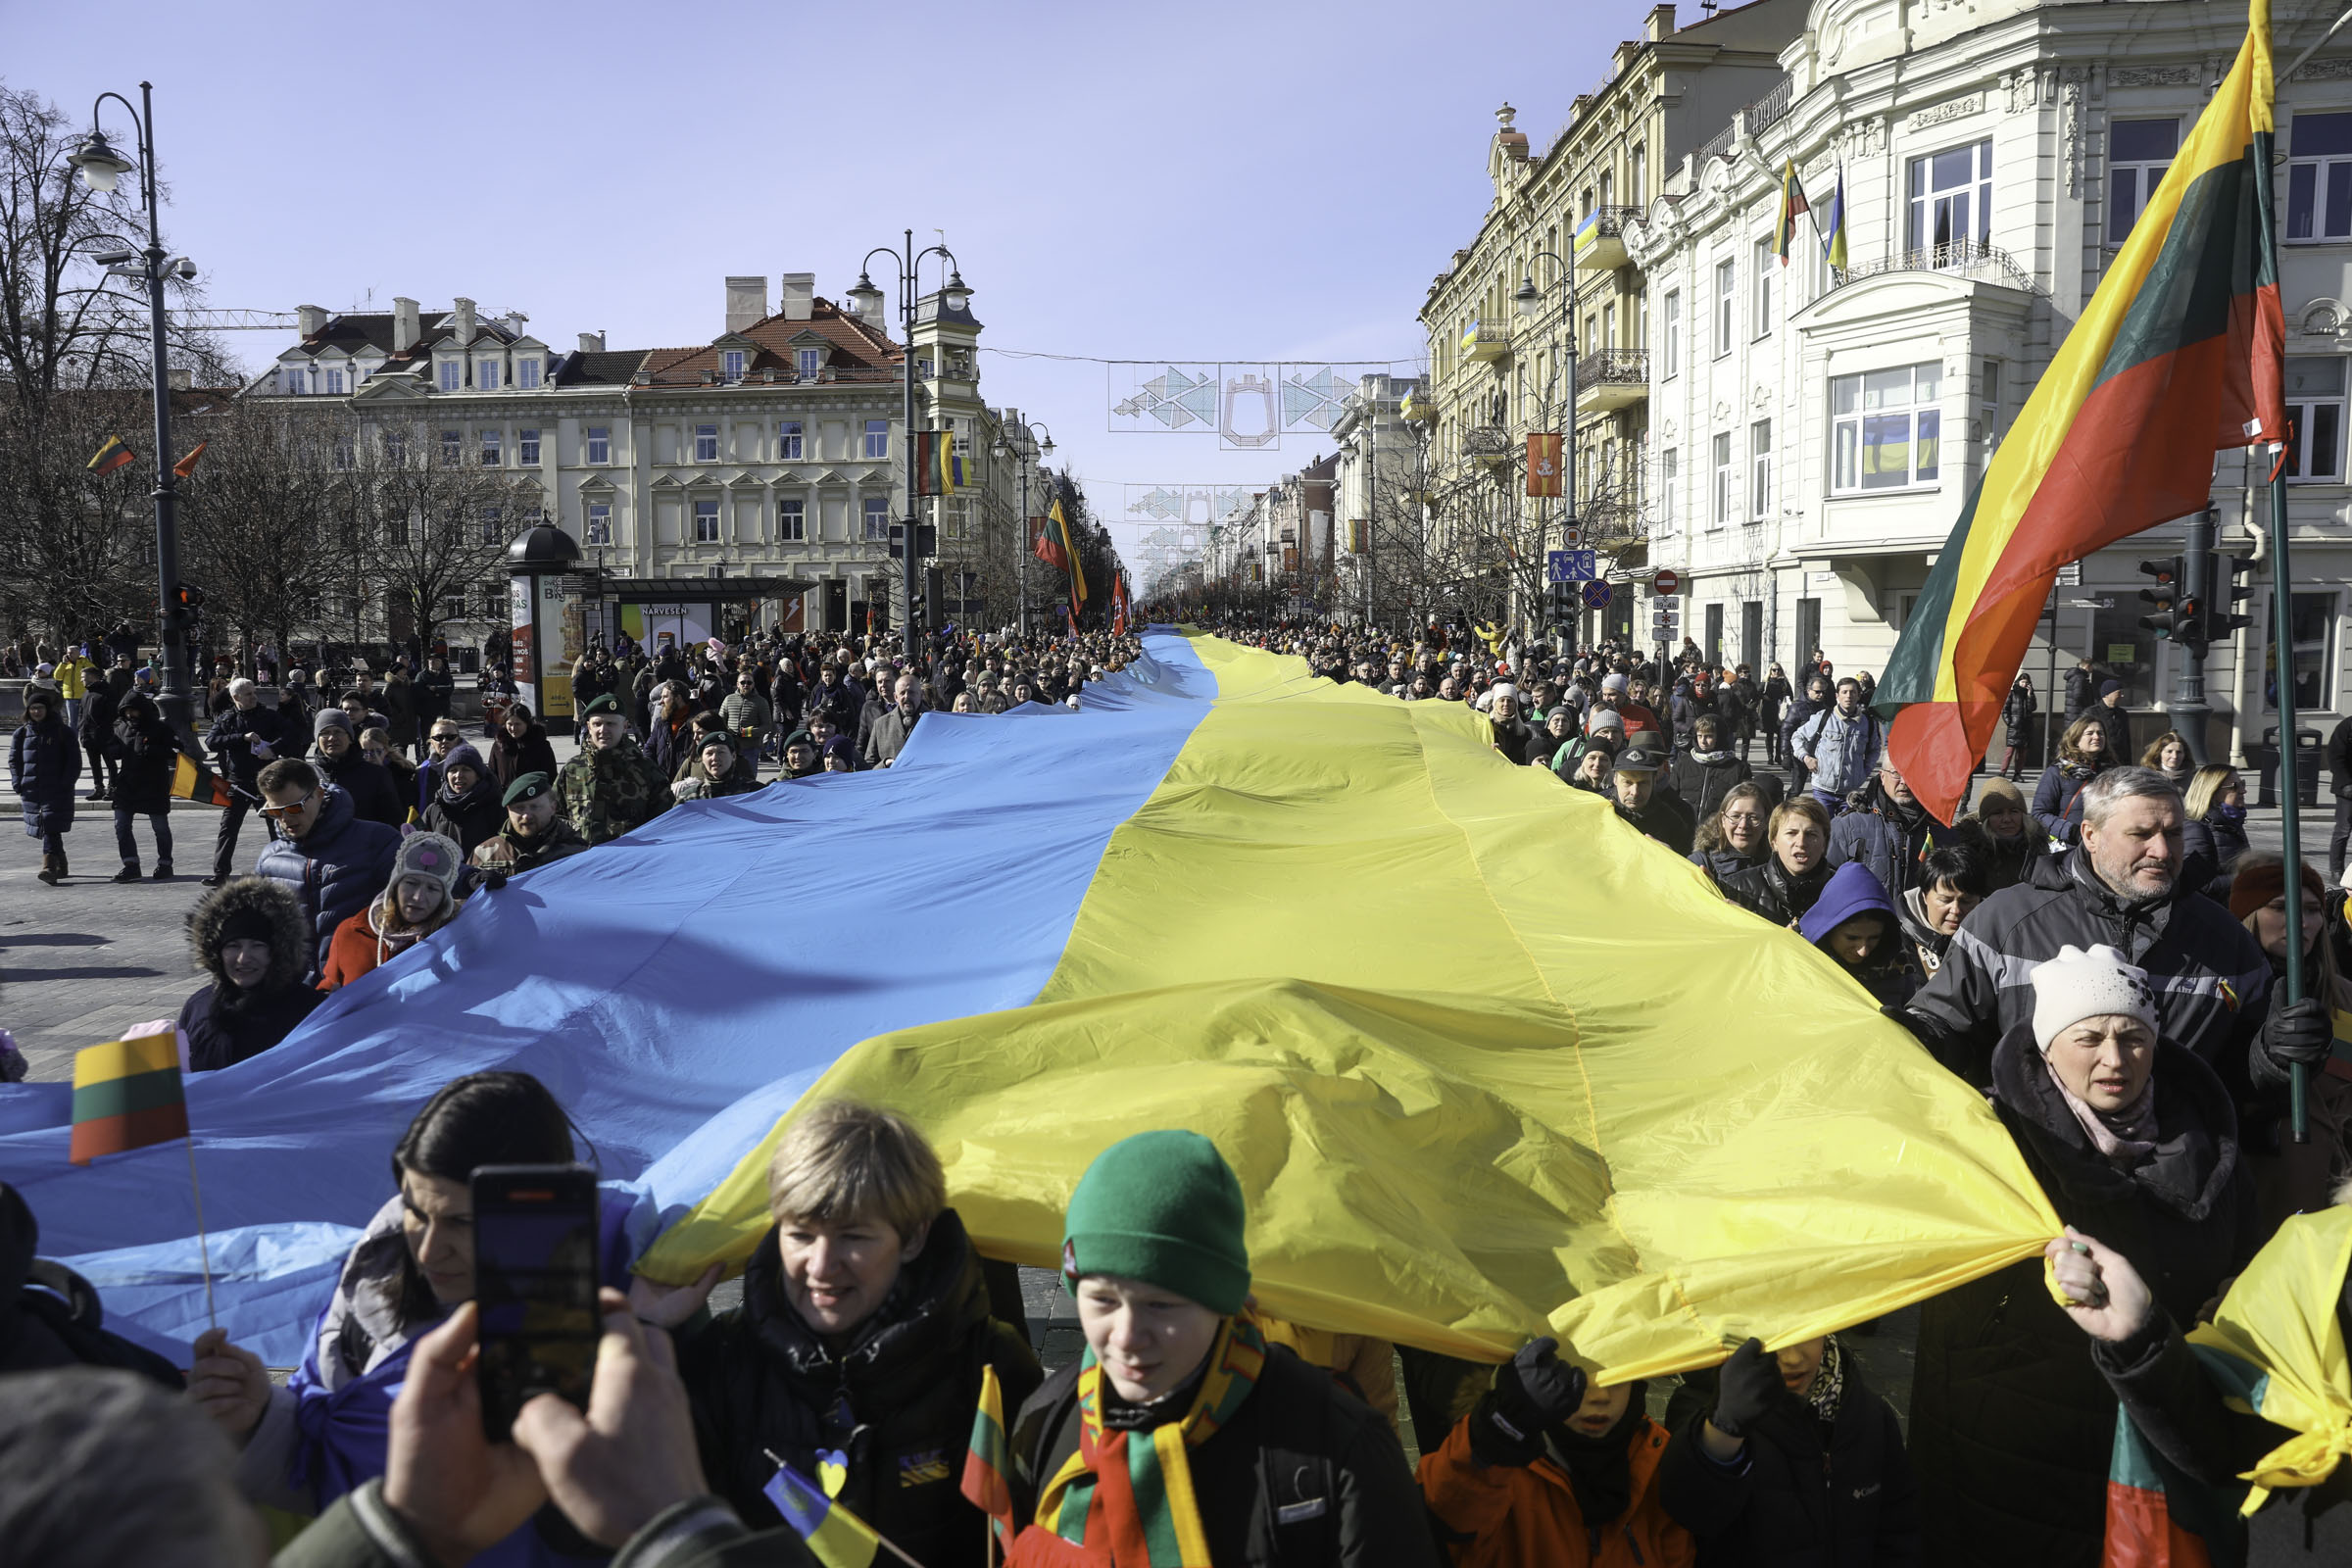 R. Tamašunienė w sprawie oświadczenia parlamentarzystów Litwy i Polski: jesteśmy z Ukraińcami